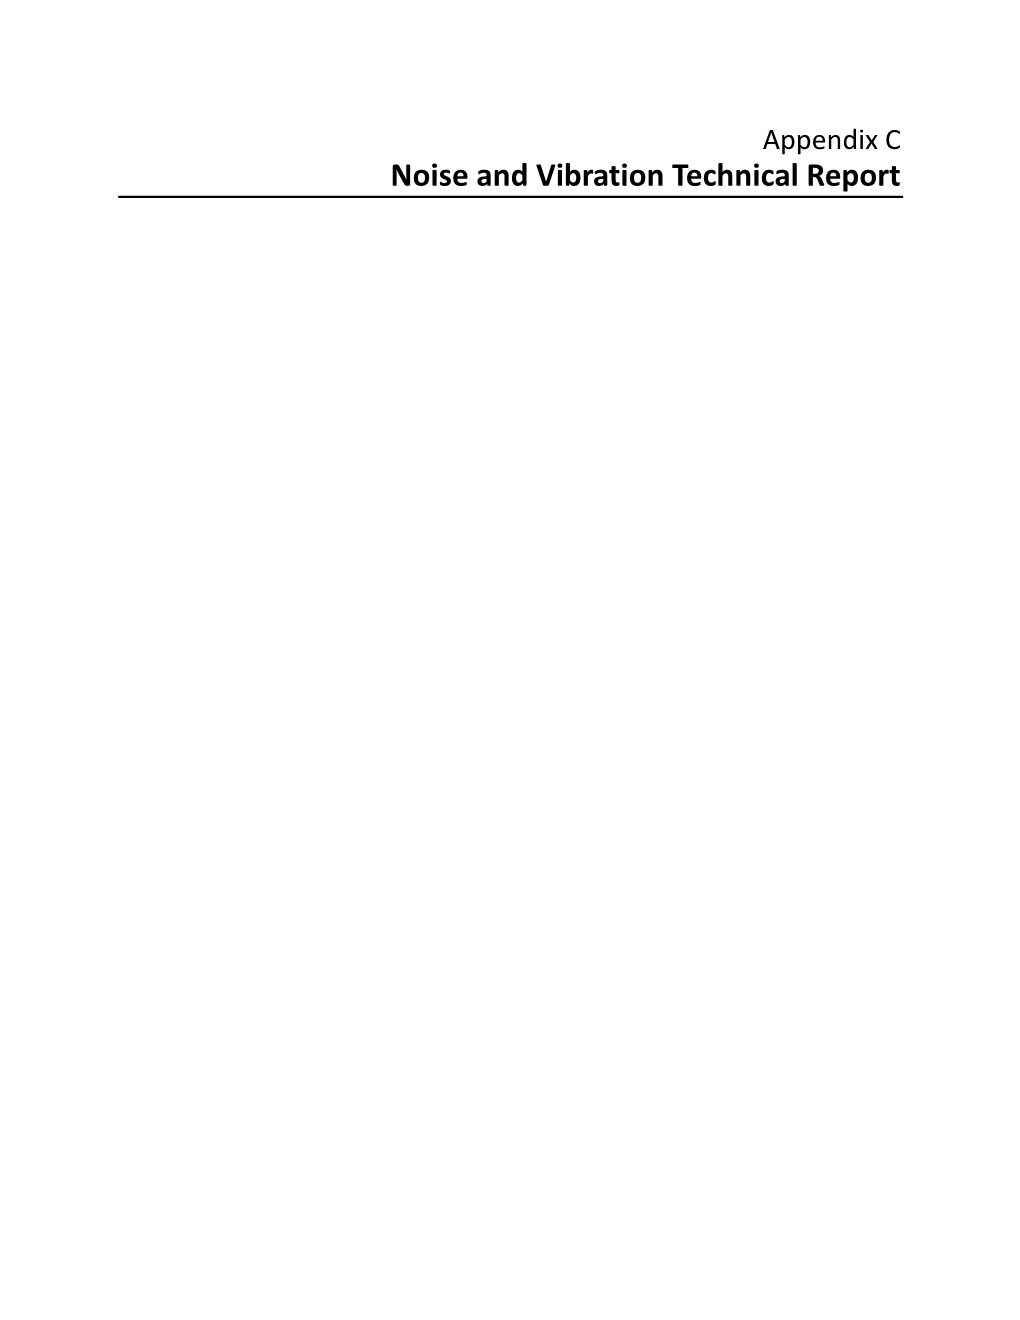 Appendix C Noise and Vibration Technical Report